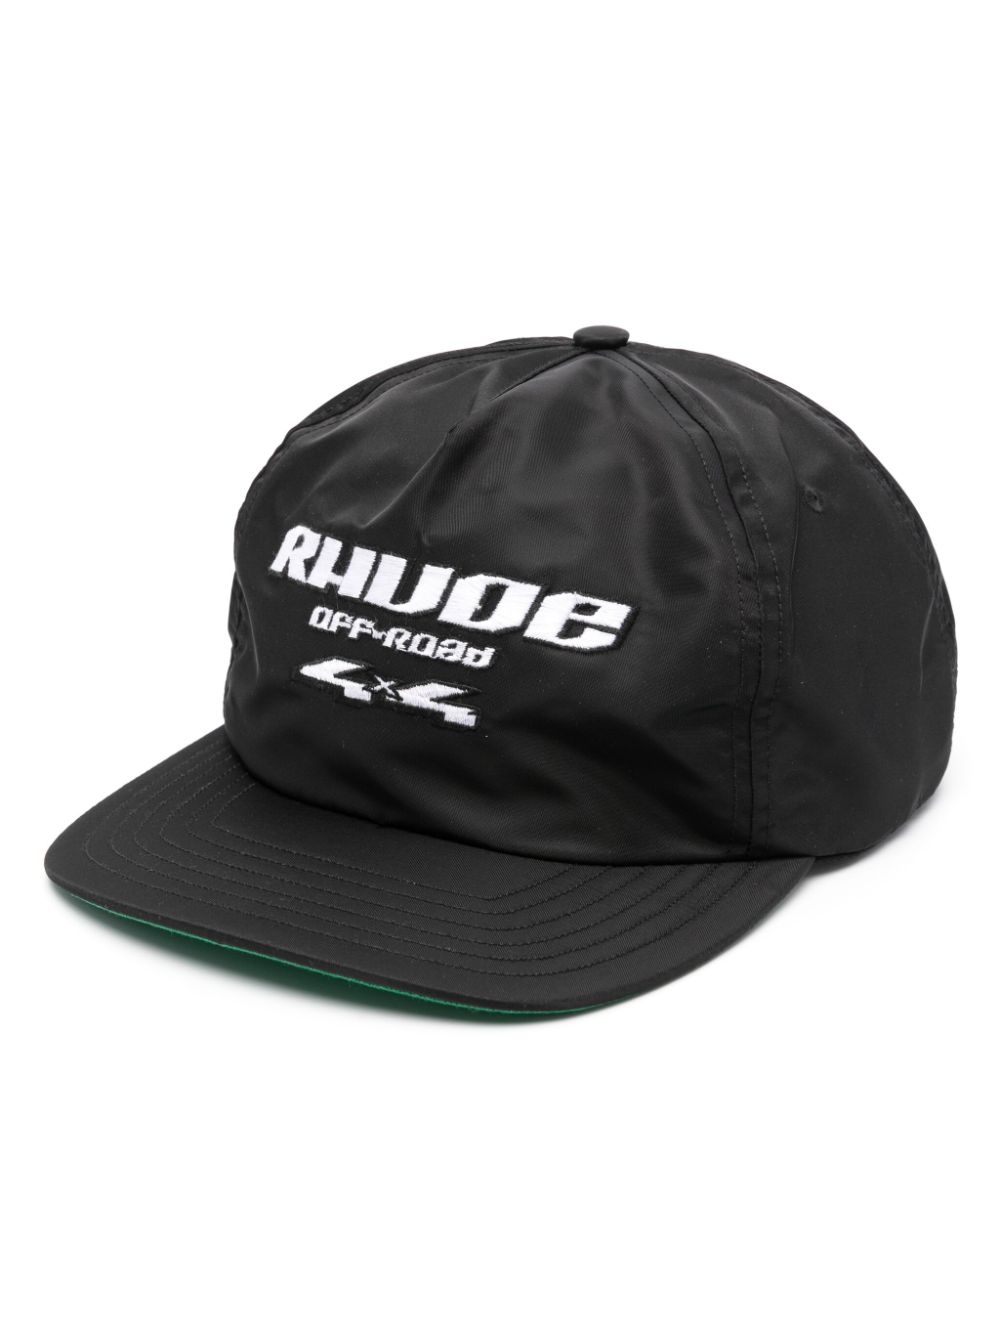 RHUDE Off-Road 4x4 hat - Black von RHUDE